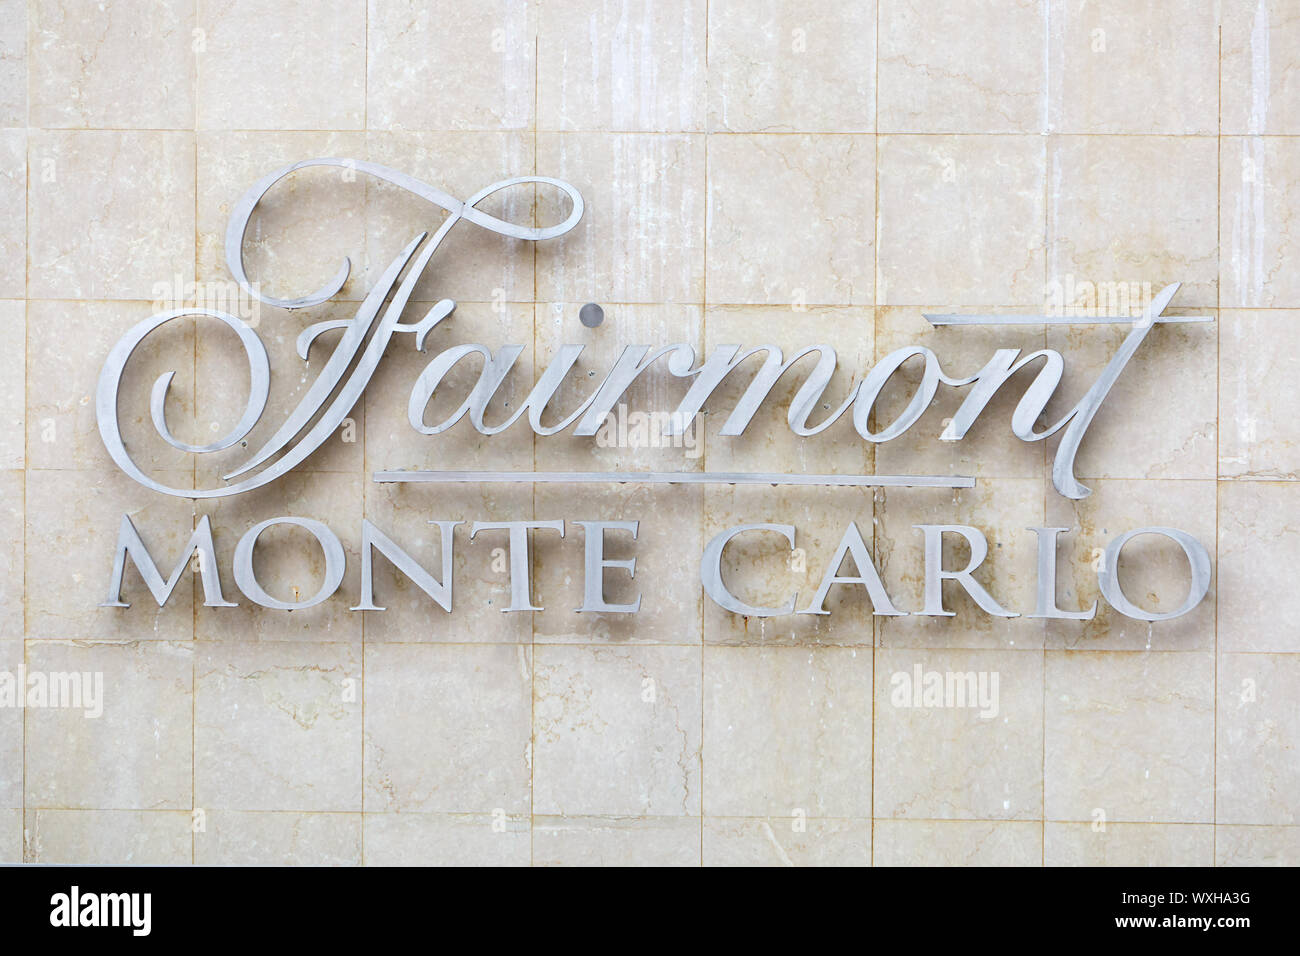 MONTE CARLO, MONACO - le 19 août 2016 : Fairmont hotel de luxe signe d'argent à l'été à Monte Carlo, Monaco. Banque D'Images